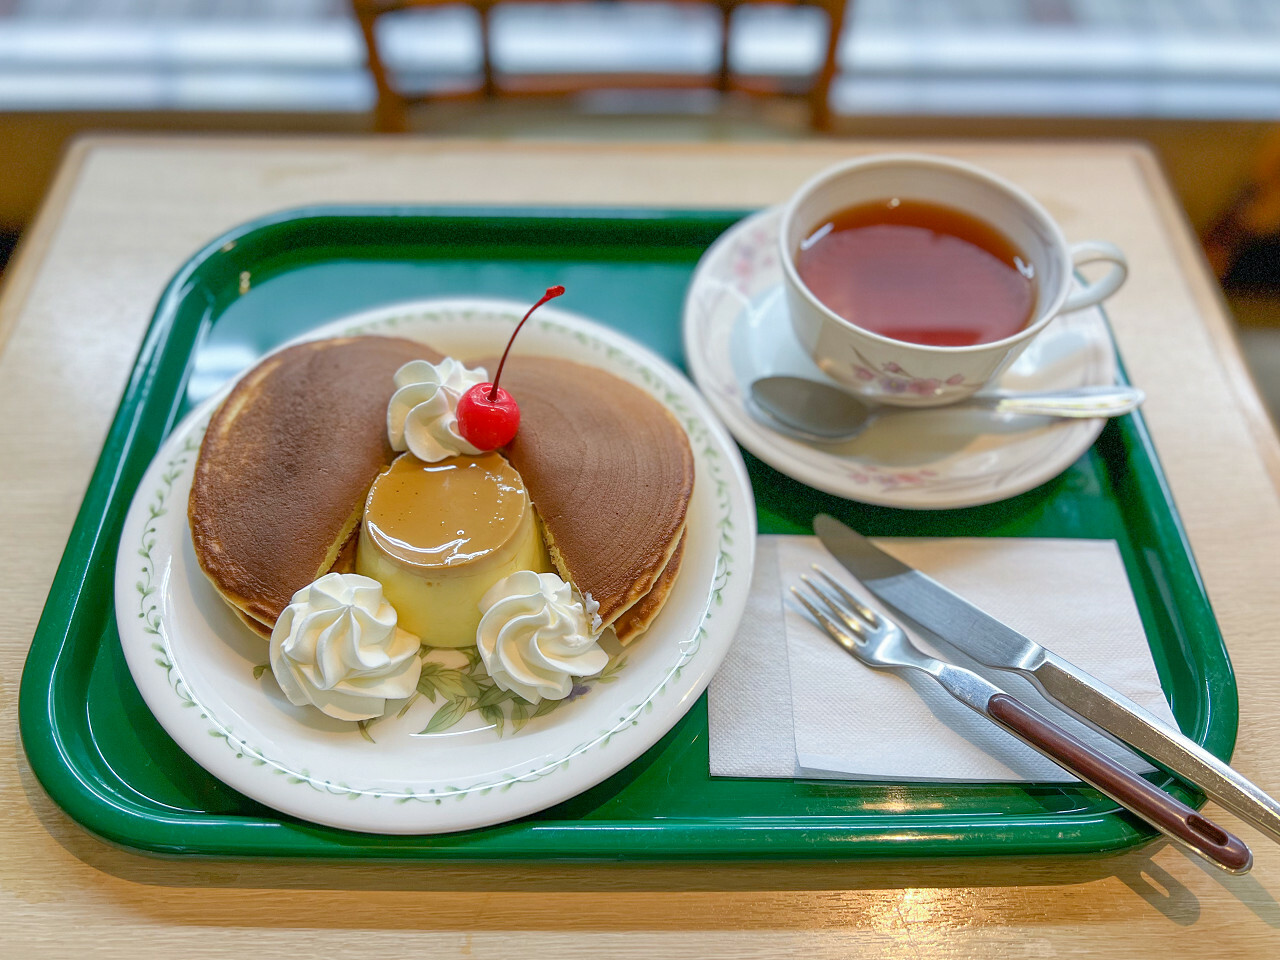 「プリンホットケーキ」750円　紅茶300円